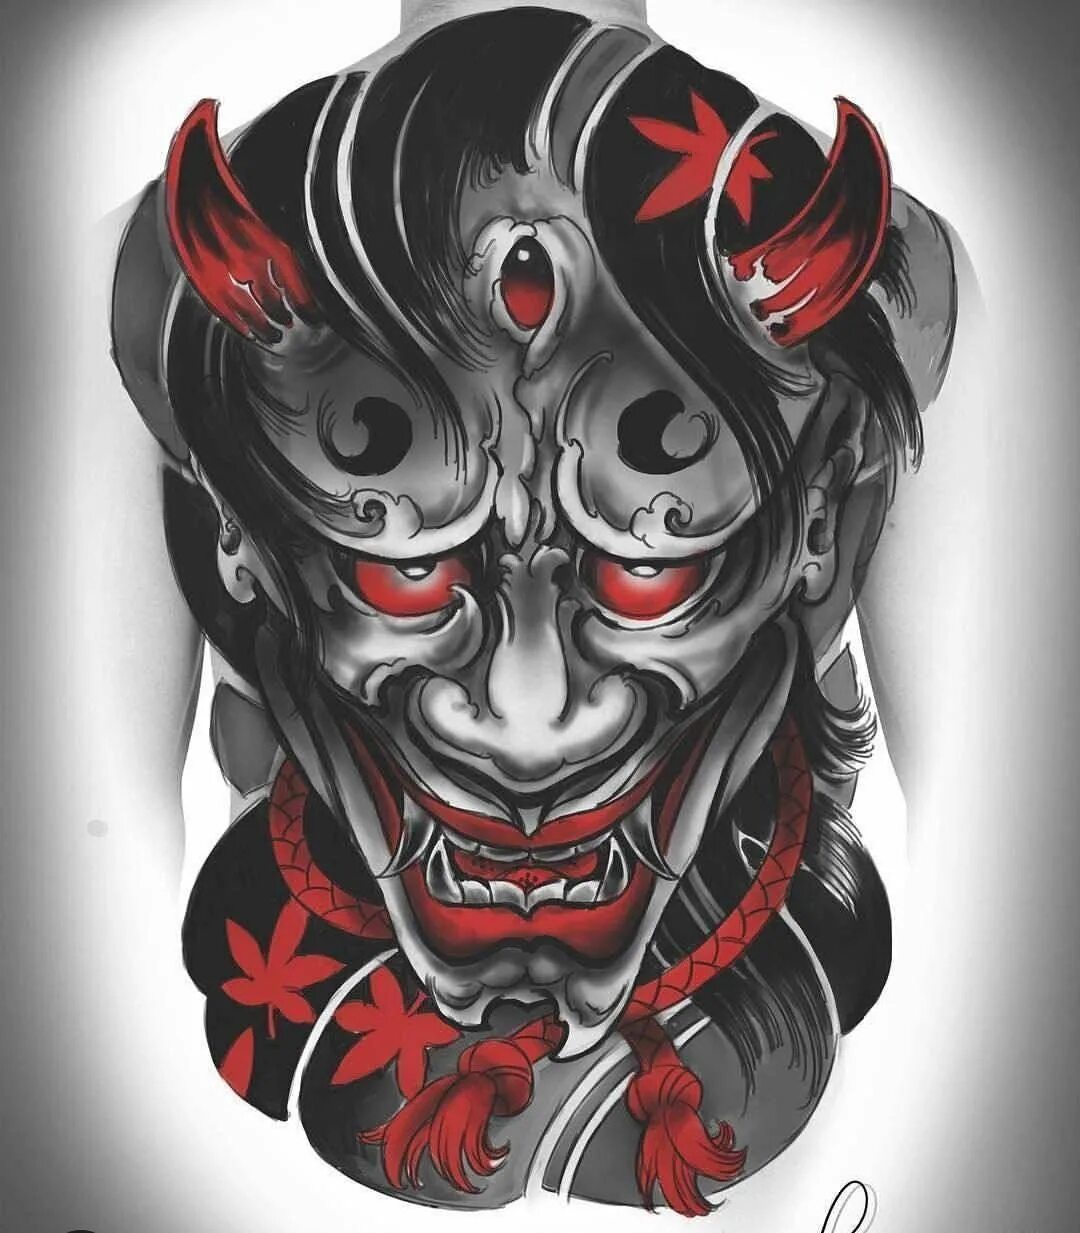 Японская маска они. Японский демон Ханья. Японская маска демона самурая Ханья. Японский демон Ханья Art. Маска Hannya демон.